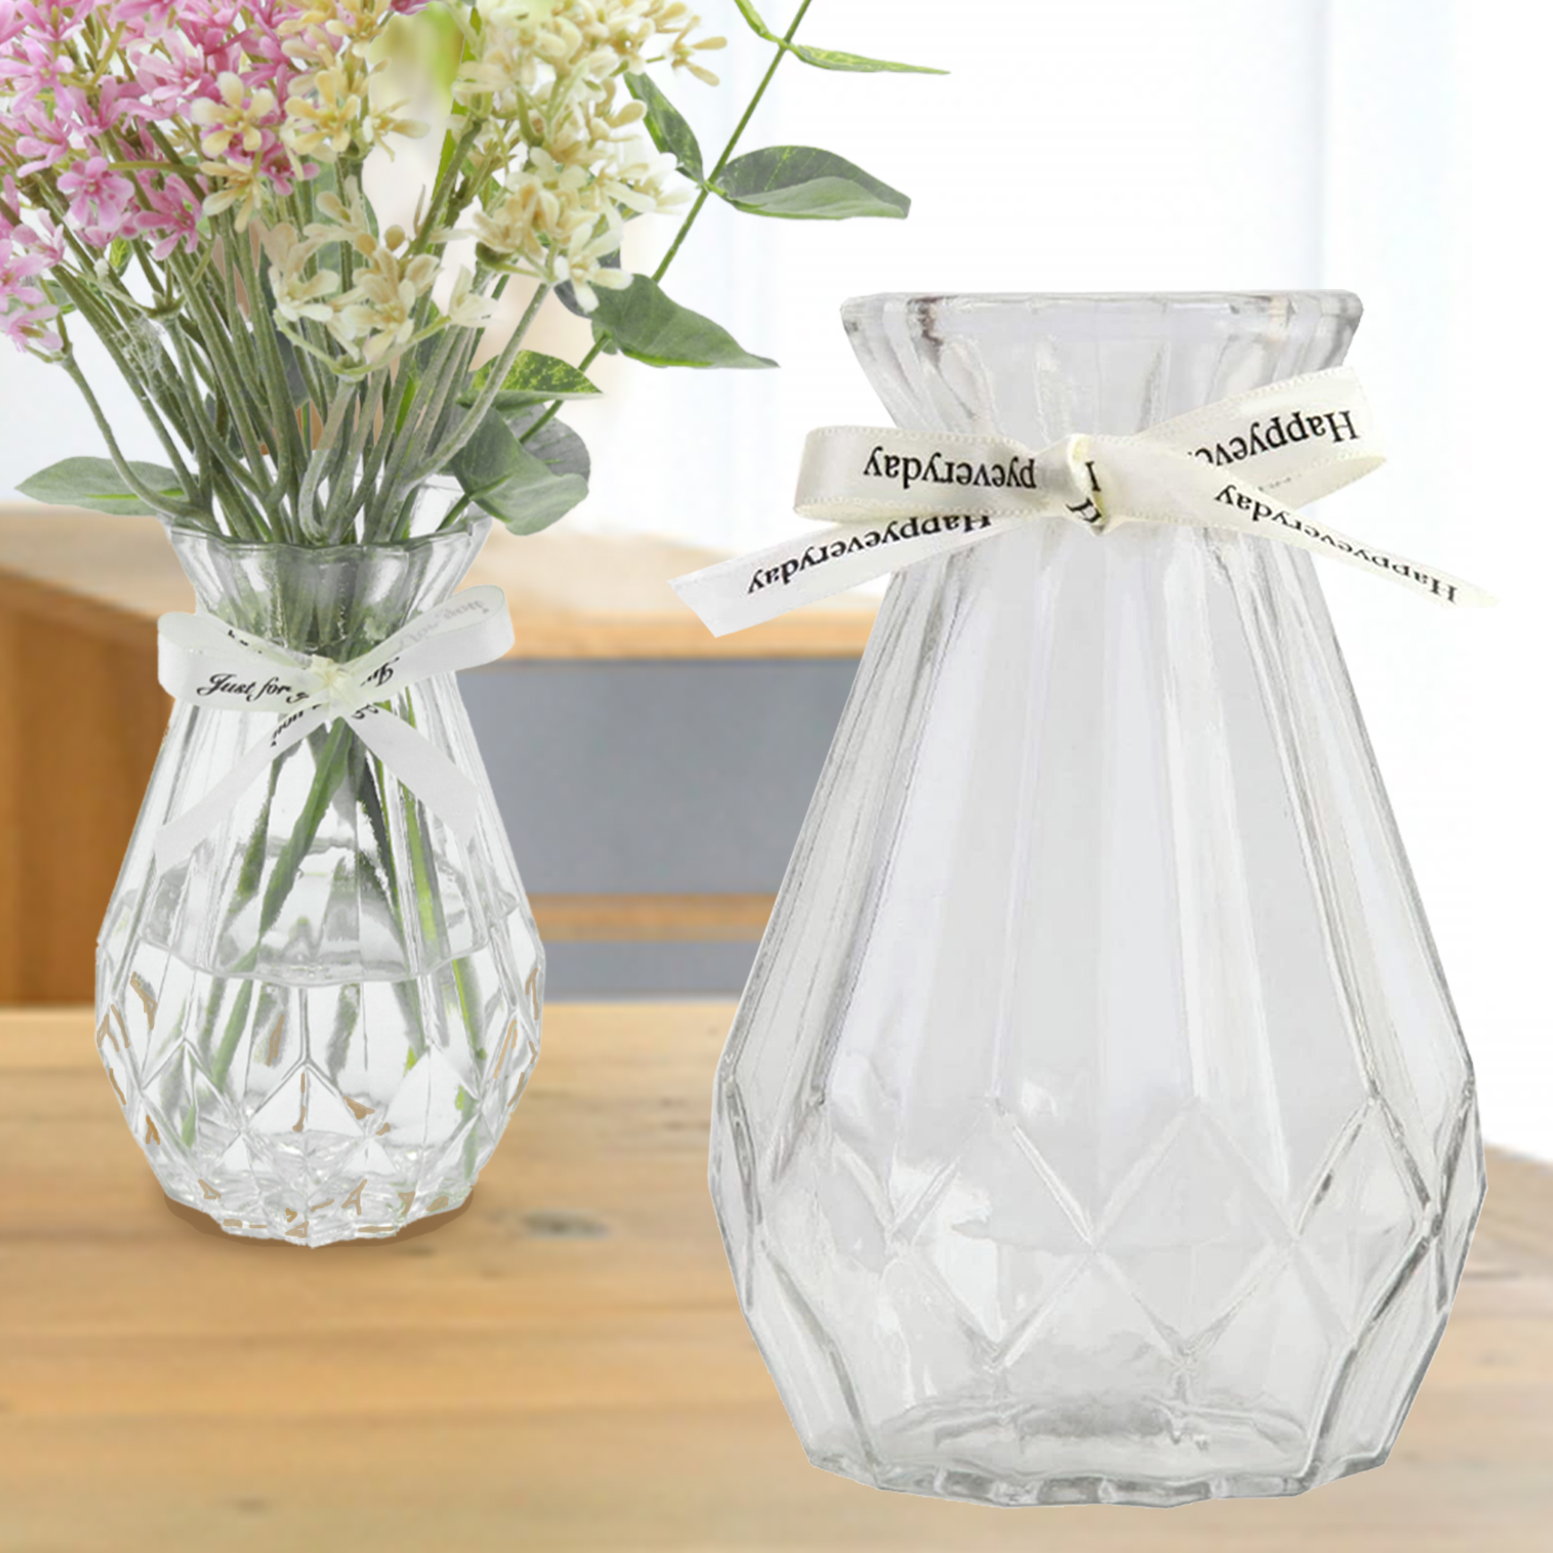 花瓶 おしゃれ ガラス 小さめ 倒れにくい ミニサイズ 透明 フラワーベース 北欧 かわいい 小さい 花びん 小 瓶 かわいい 可愛い ビン 高さ15cm リボン 花器 かびん 玄関 リビング 食卓 ミニ 15cm プレゼント CHURACY 送料無料